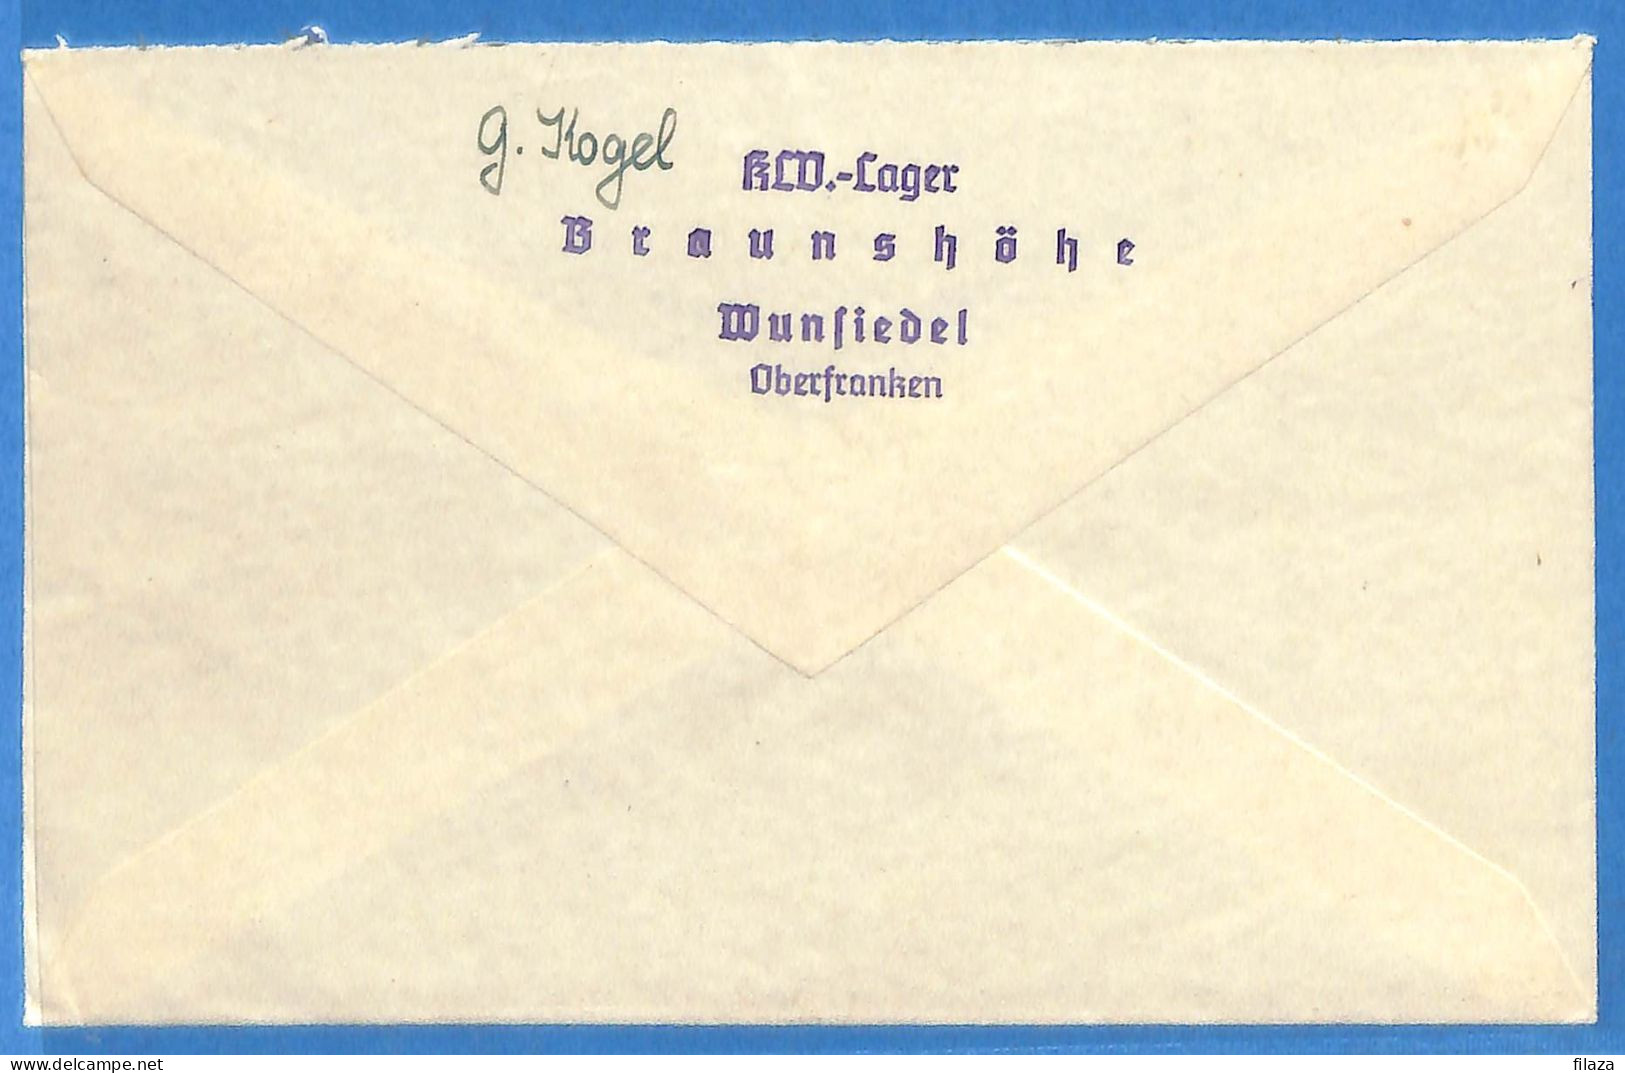 Allemagne Reich 1941 - Lettre De Wunsiedel - G33523 - Covers & Documents